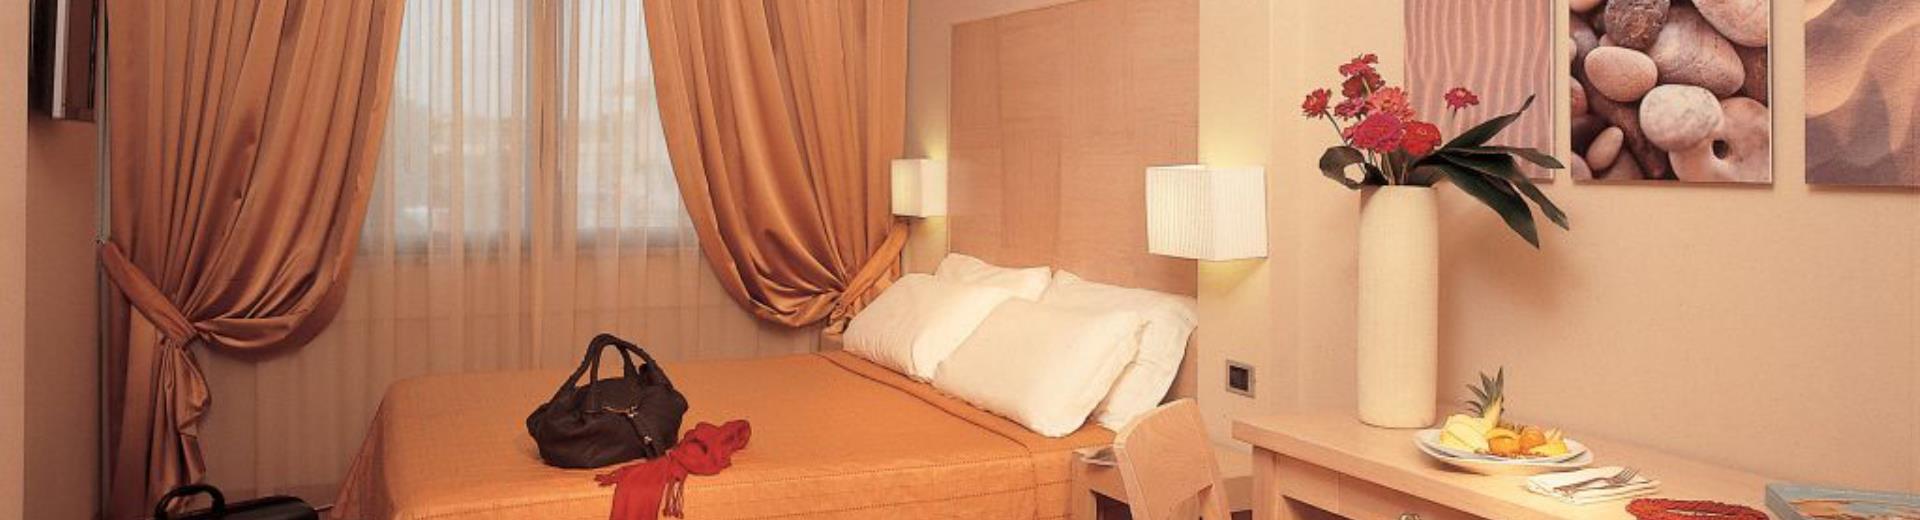 Cerchi servizio e ospitalità per il tuo soggiorno a Roma Fiumicino? Prenota una camera al Best Western Hotel Rome Airport